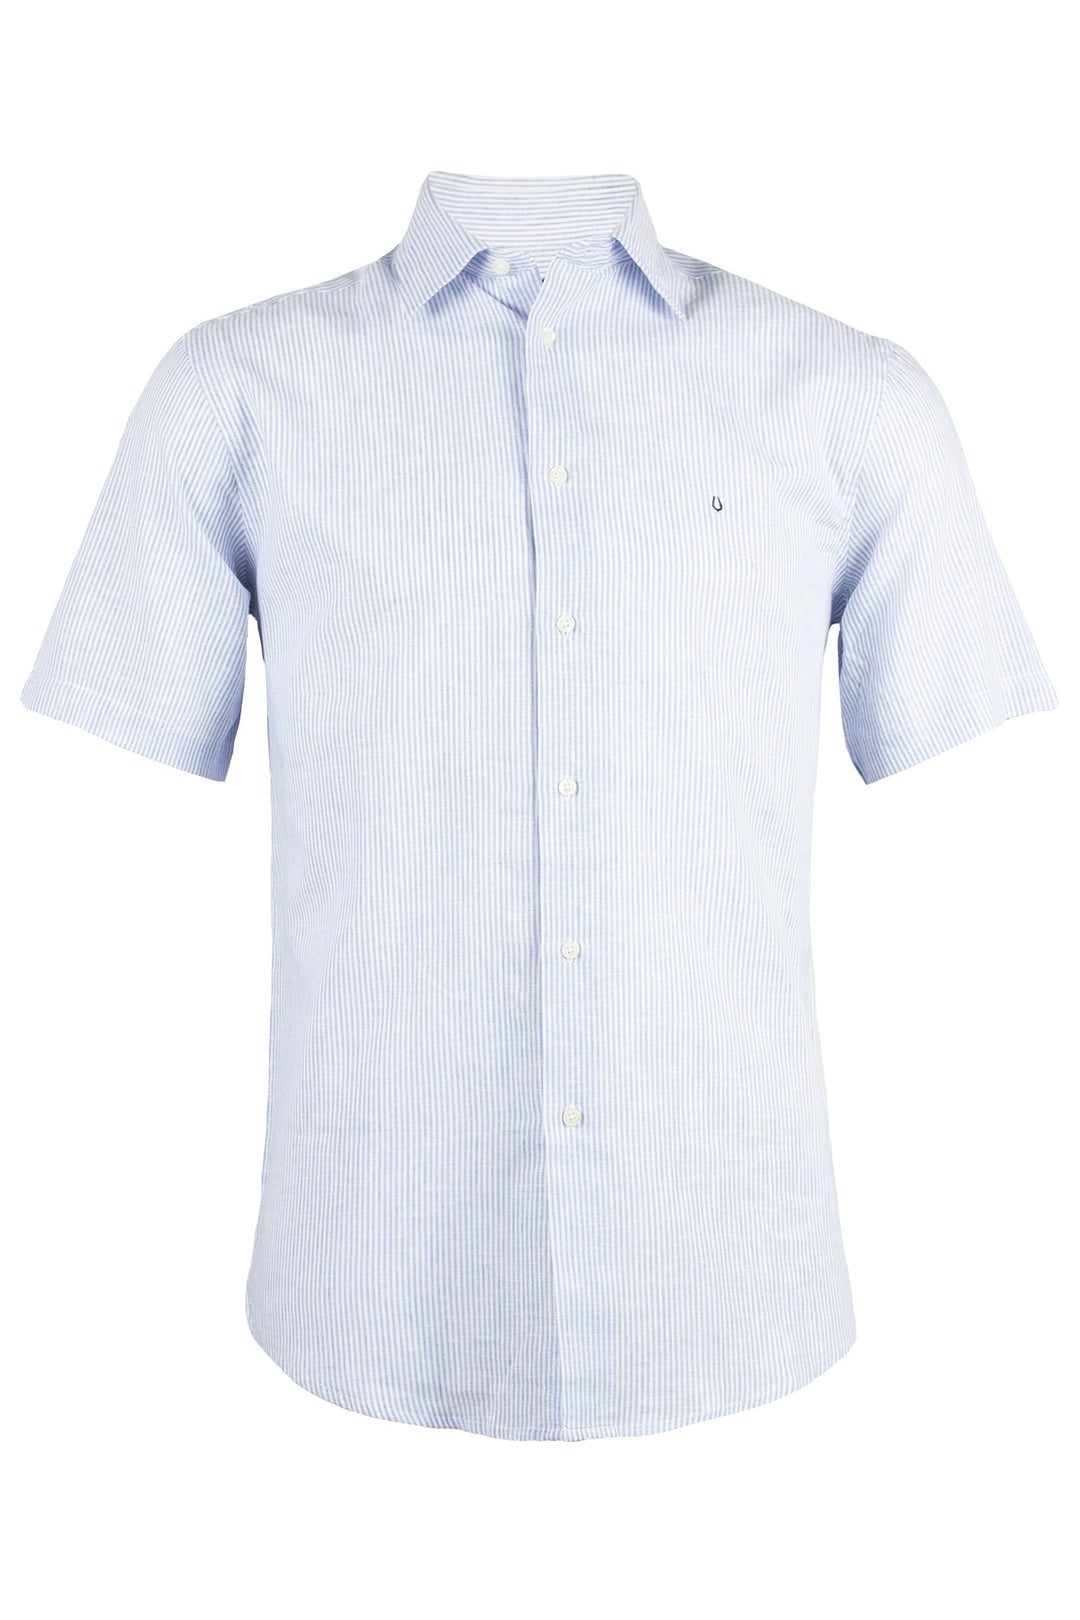 Camicia uomo mezza manica collo italiano in misto lino rigata blu e bianca